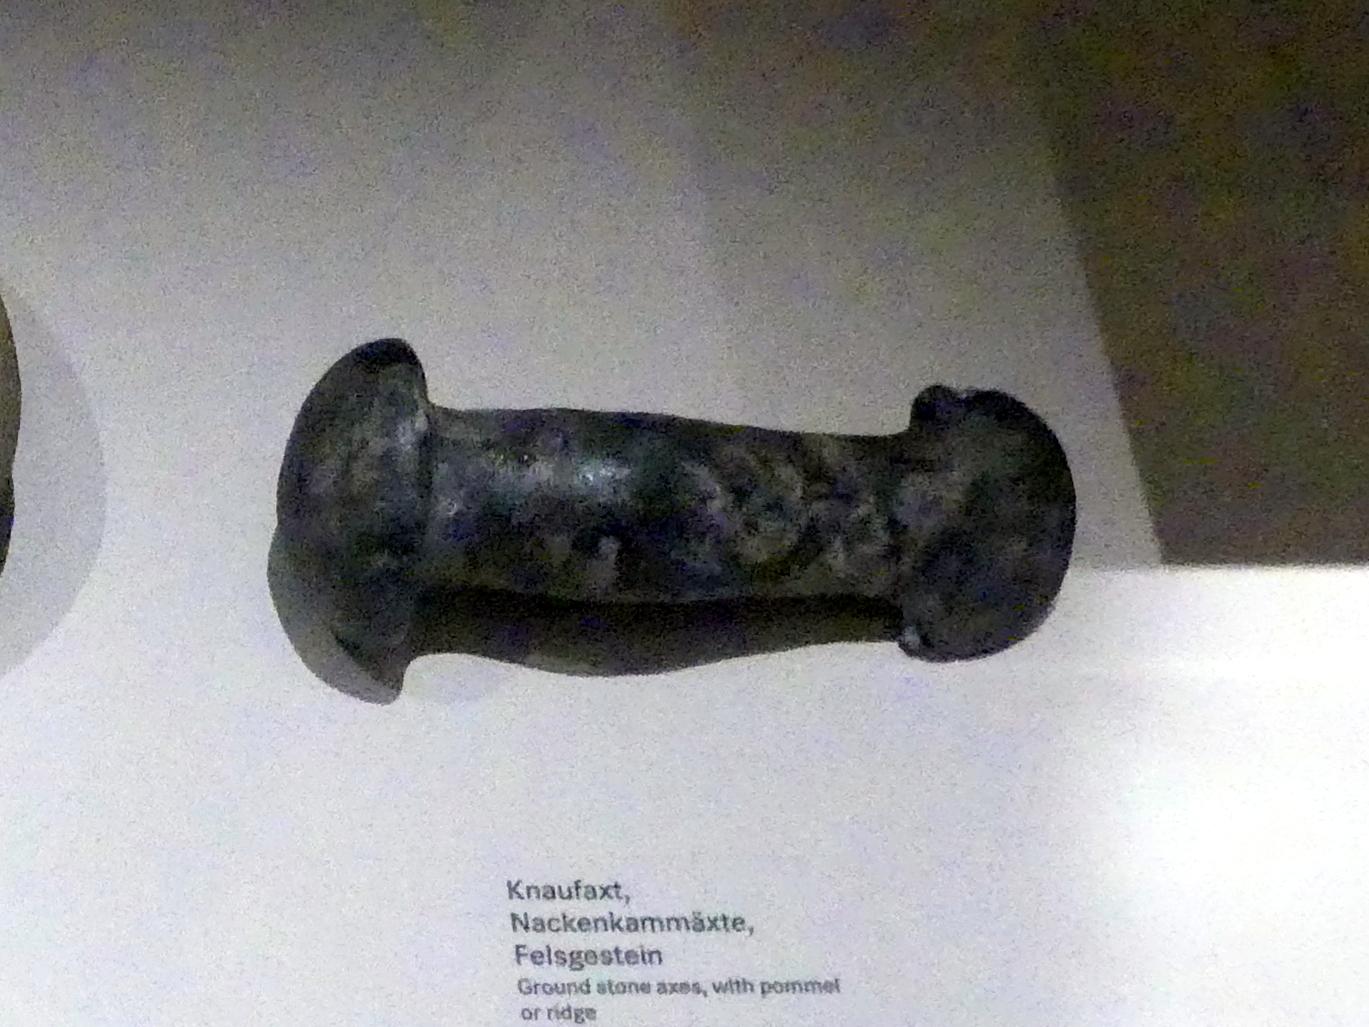 Knaufaxt, Nordisches Neolithikum, 4400 - 2350 v. Chr., 2800 - 2350 v. Chr., Bild 1/2